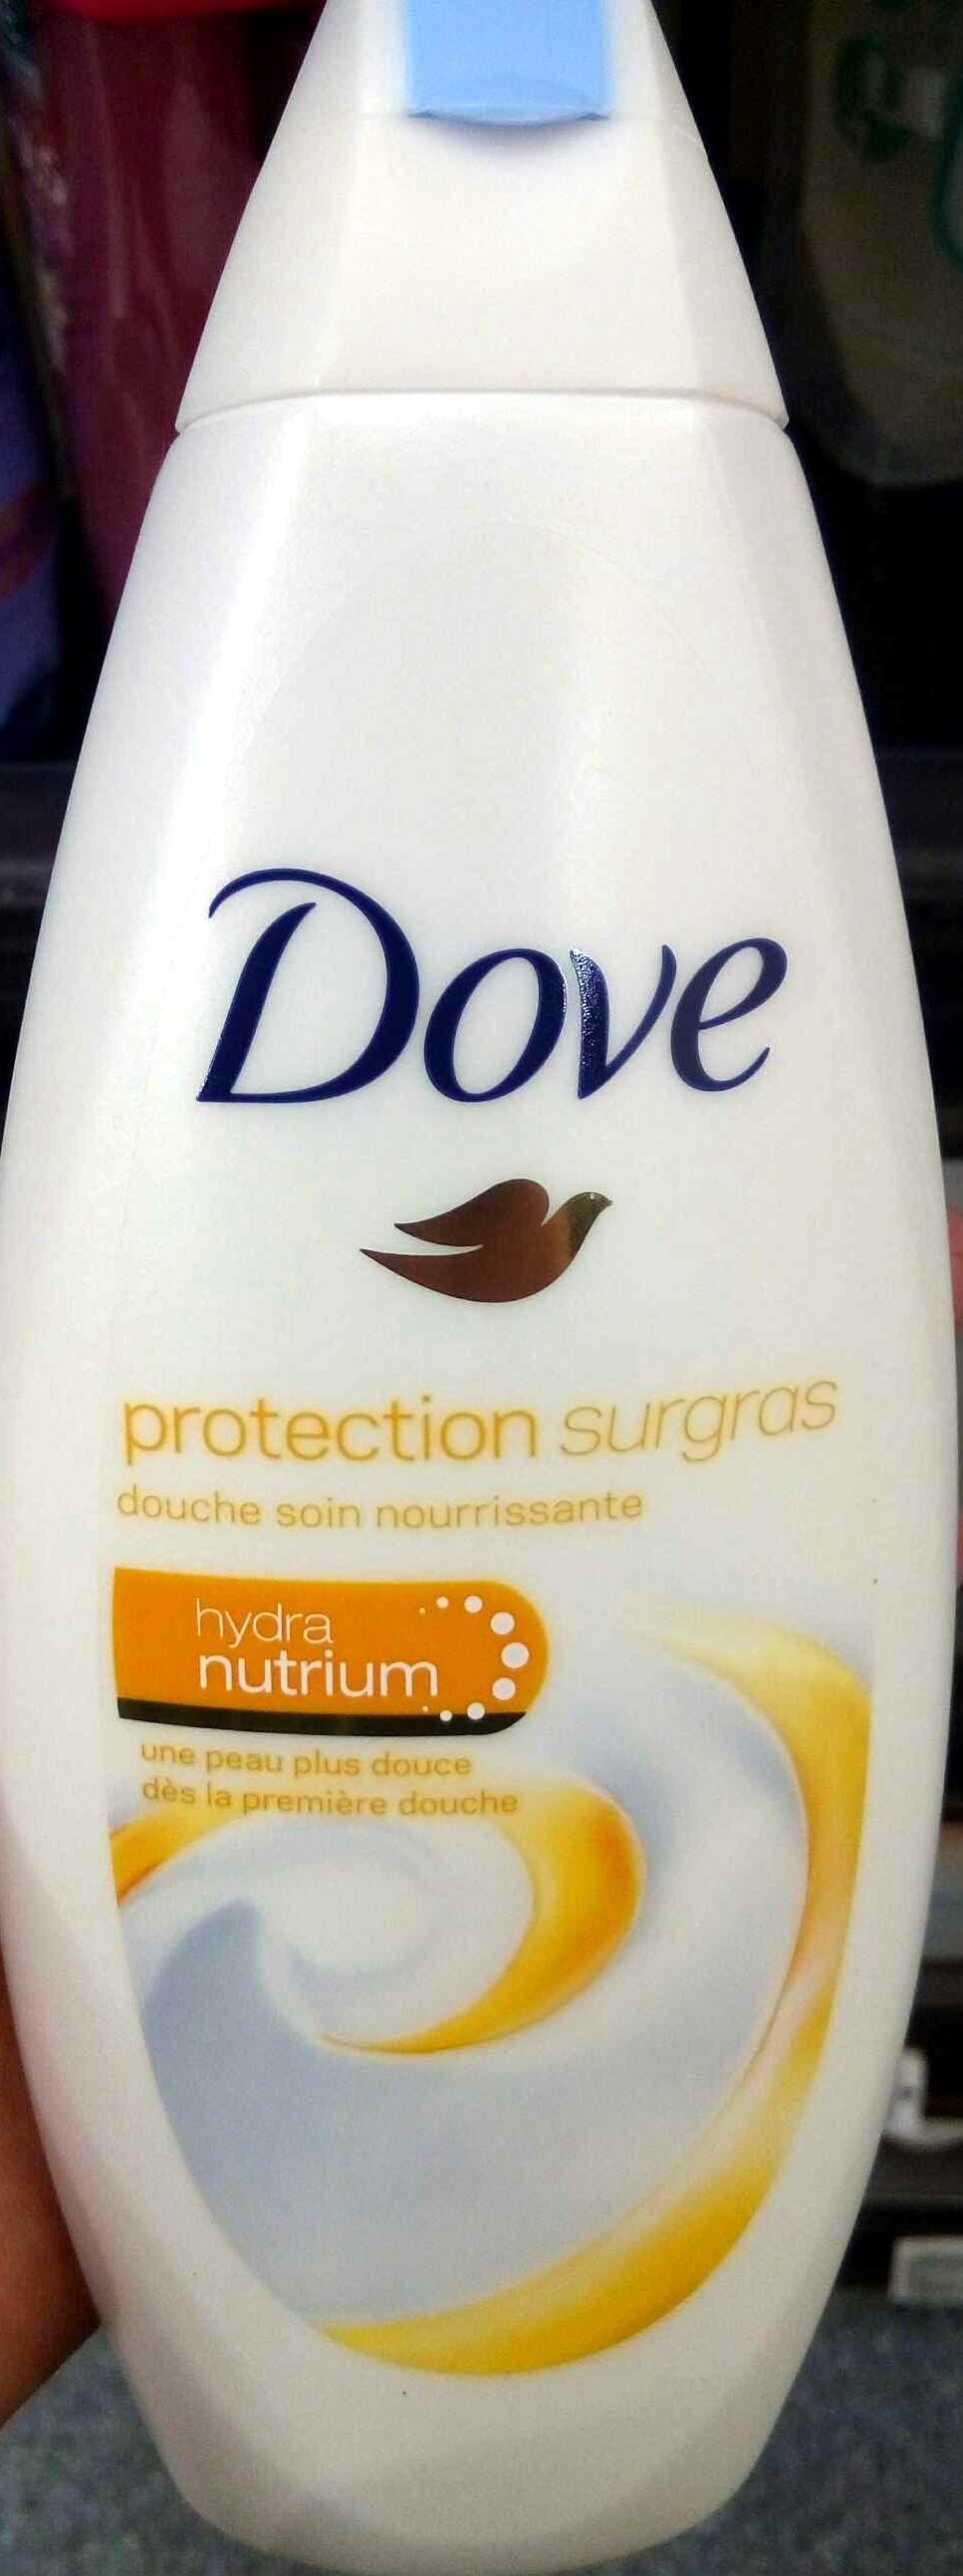 Protection surgras douche soin nourrissante - Produit - fr